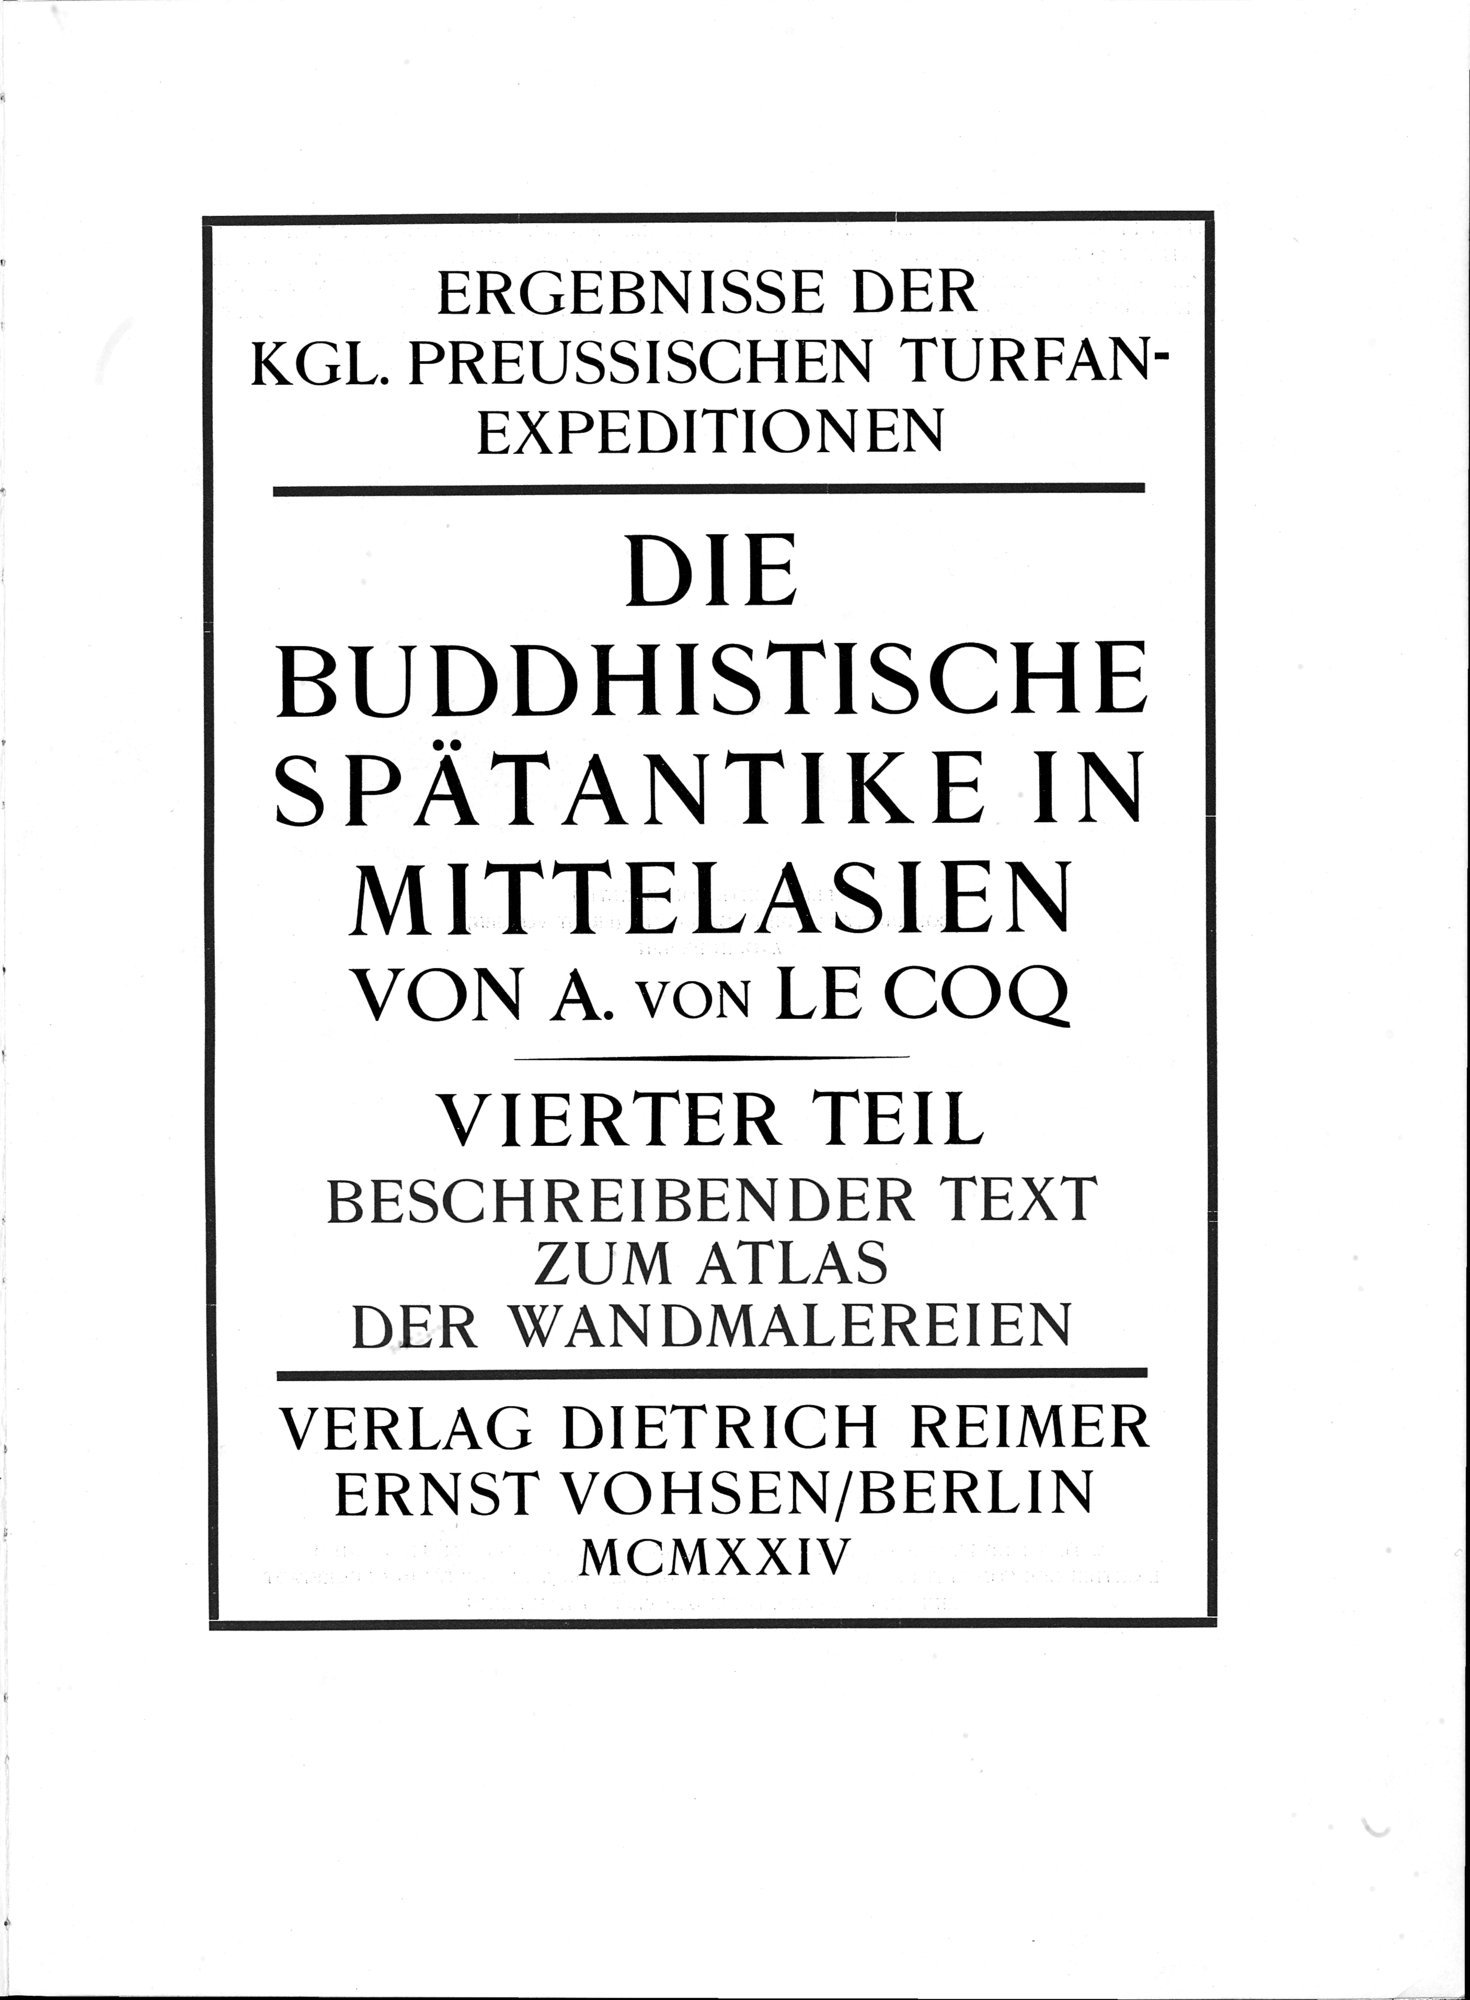 Die Buddhistische Spätantike in Mittelasien : vol.4 / Page 33 (Grayscale High Resolution Image)